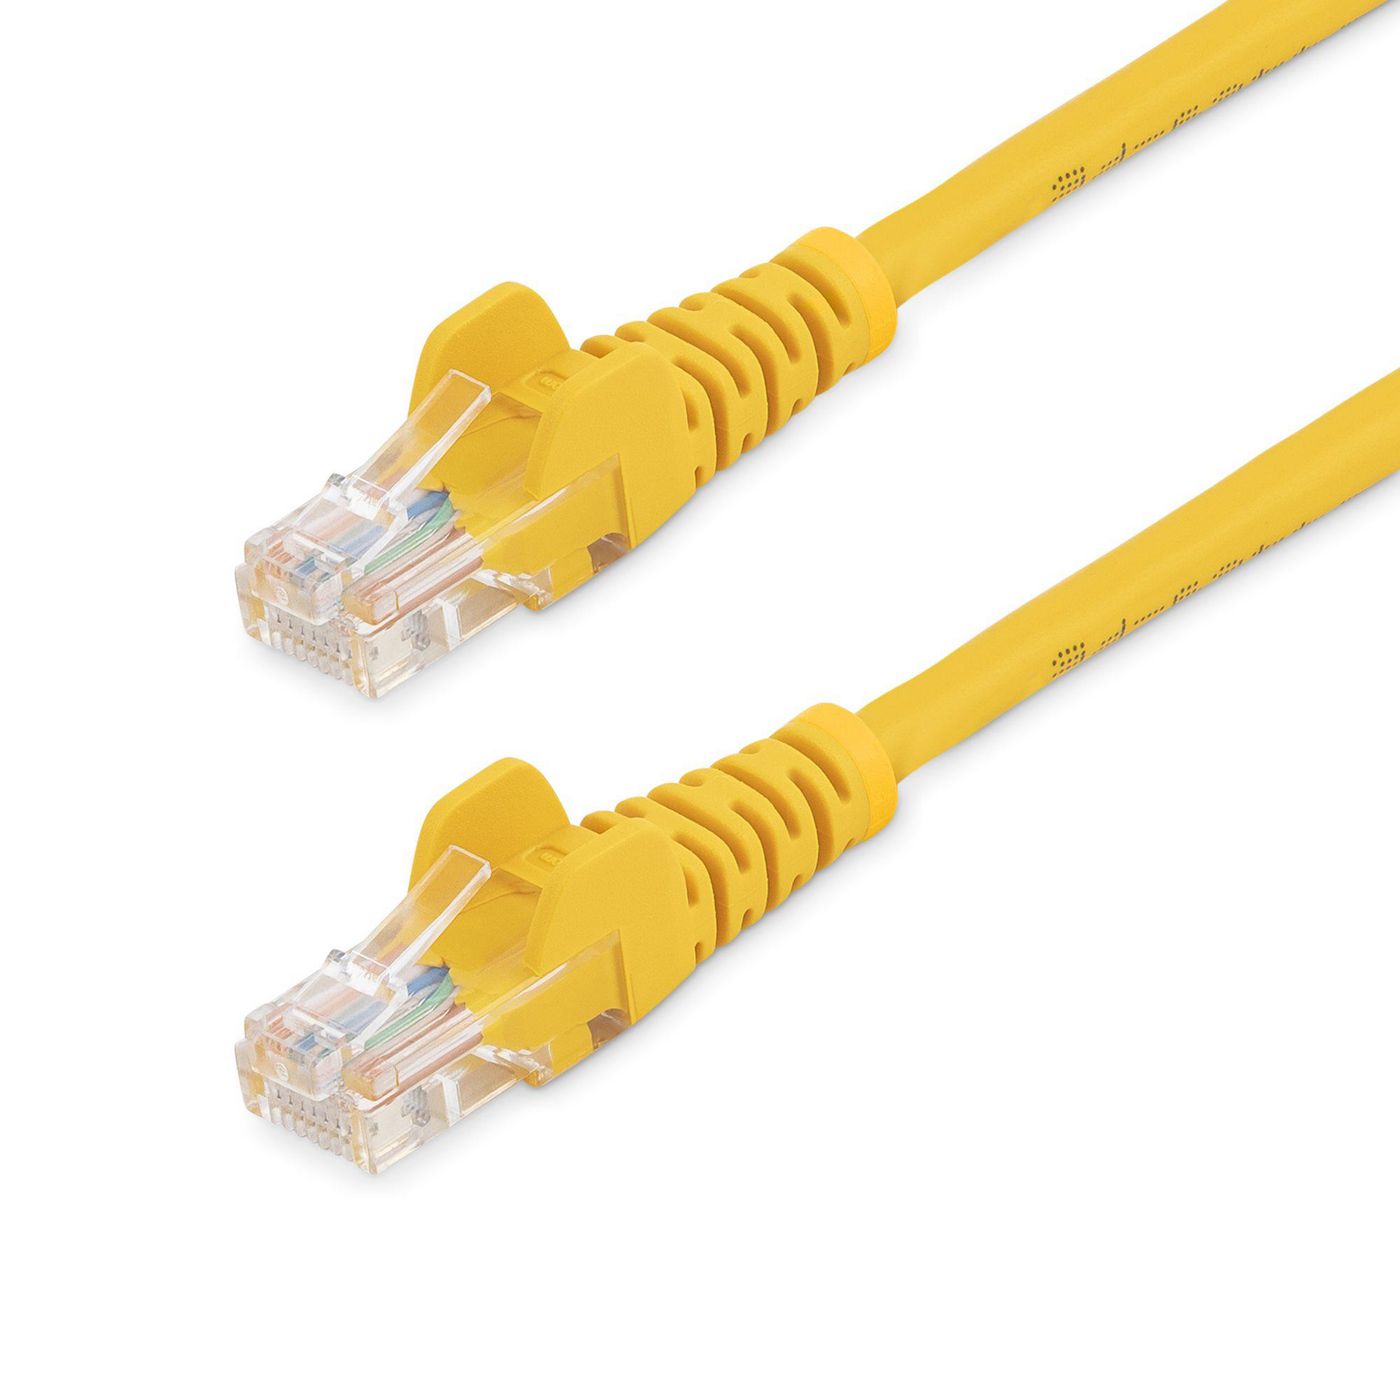 STARTECH.COM 0,5m Cat5e Ethernet Netzwerkkabel Snagless mit RJ45 - Cat 5e UTP Kabel - Gelb